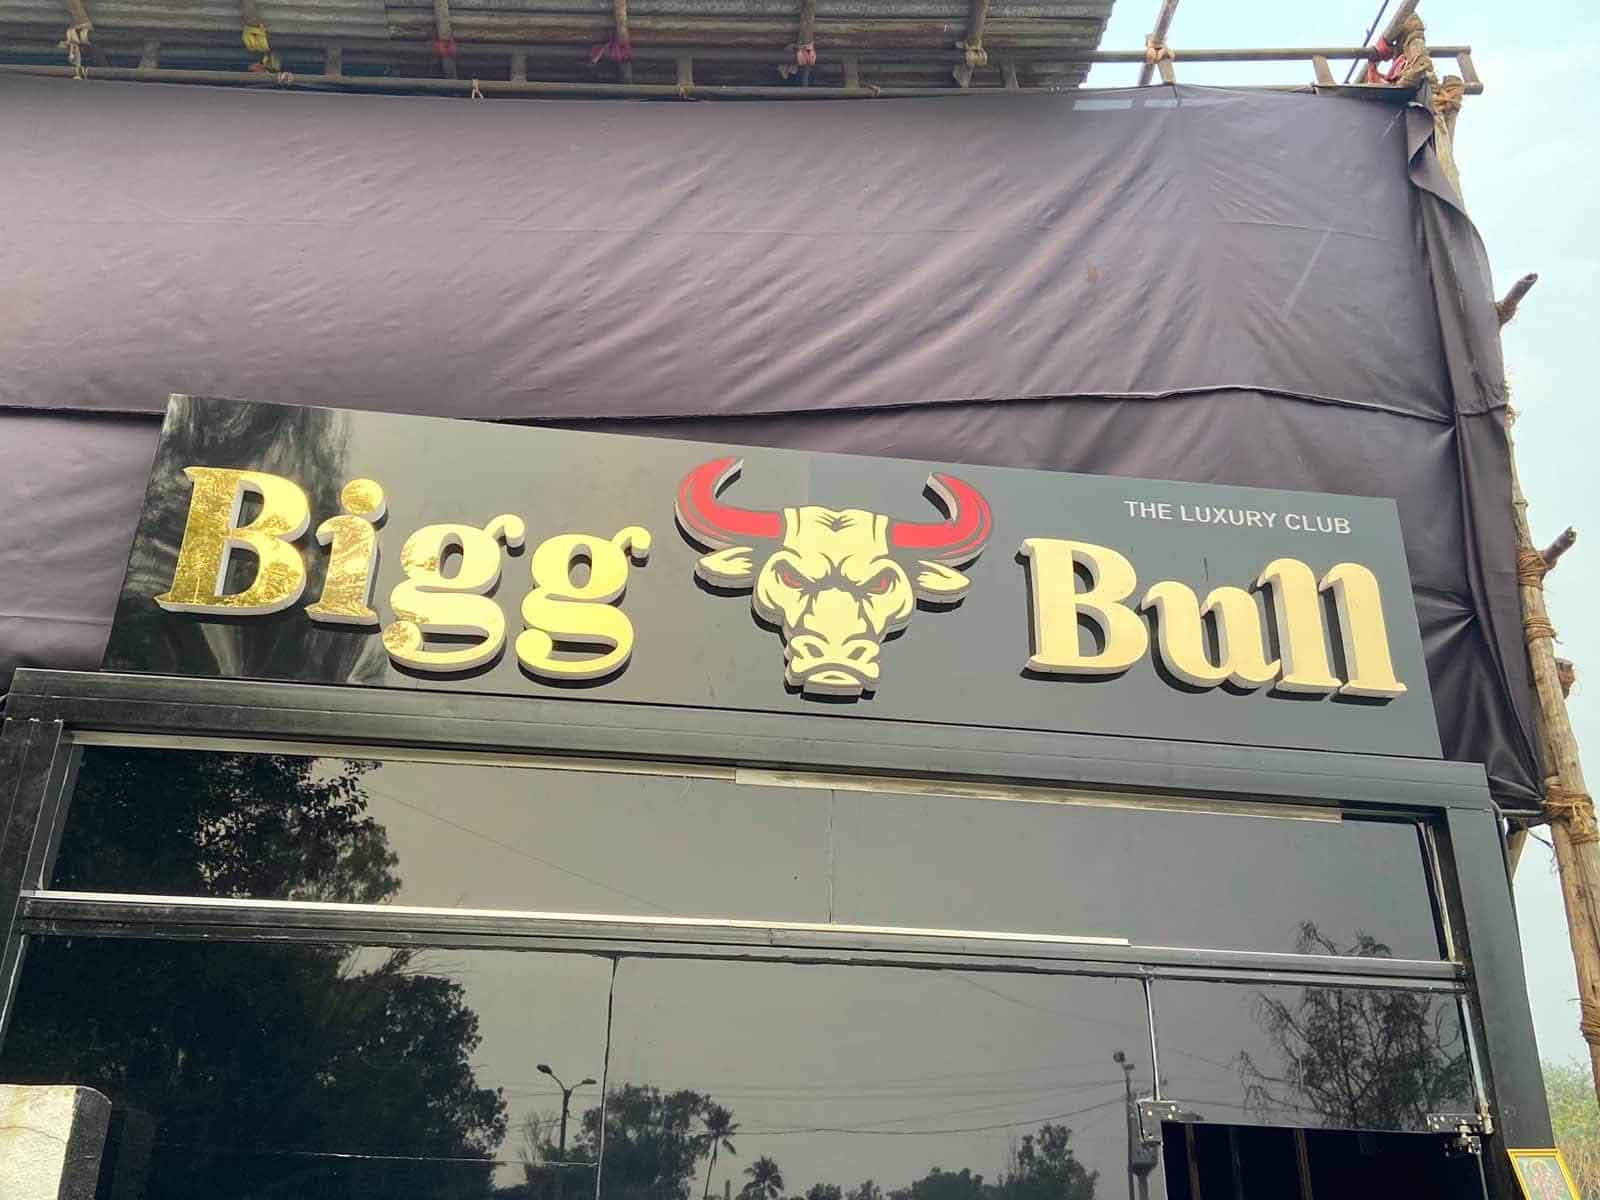 Bigg Bull - The Luxury Club, Mundhwa, Pune | Zomato